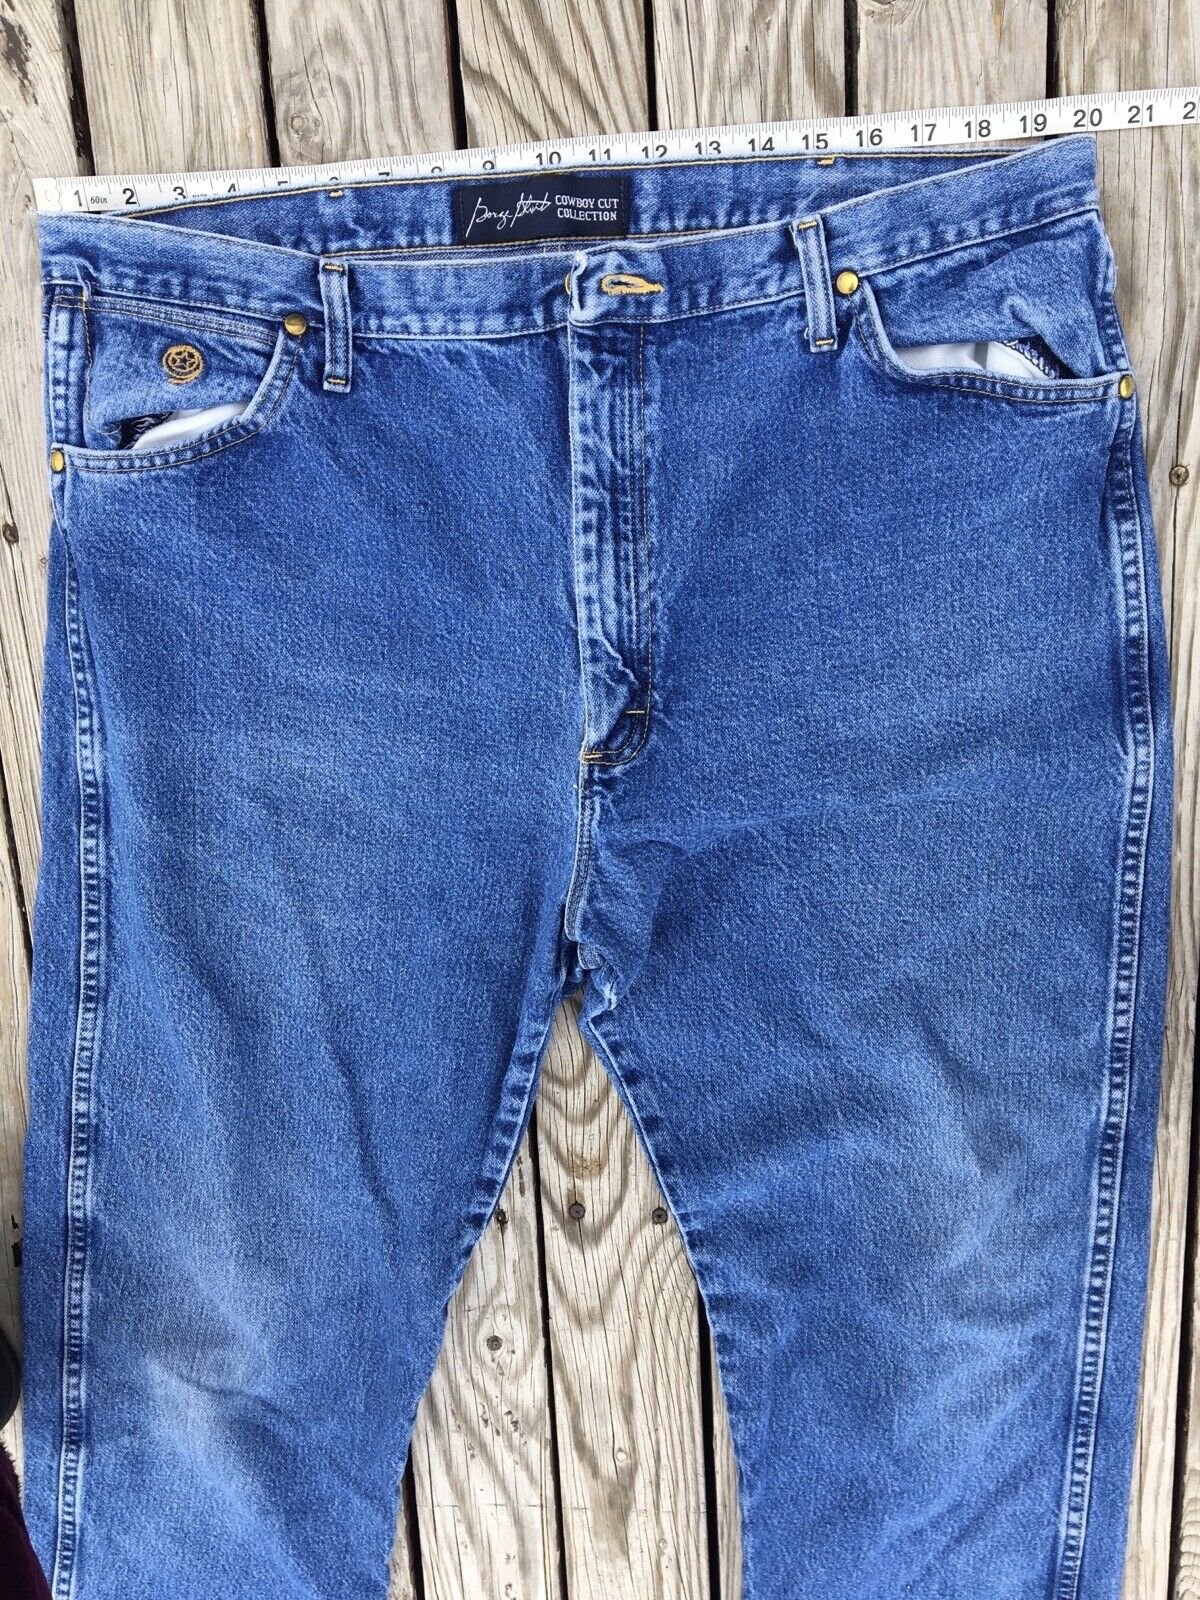 Wrangler Cowboy Cut George Strait Blue Jeans West… - image 6